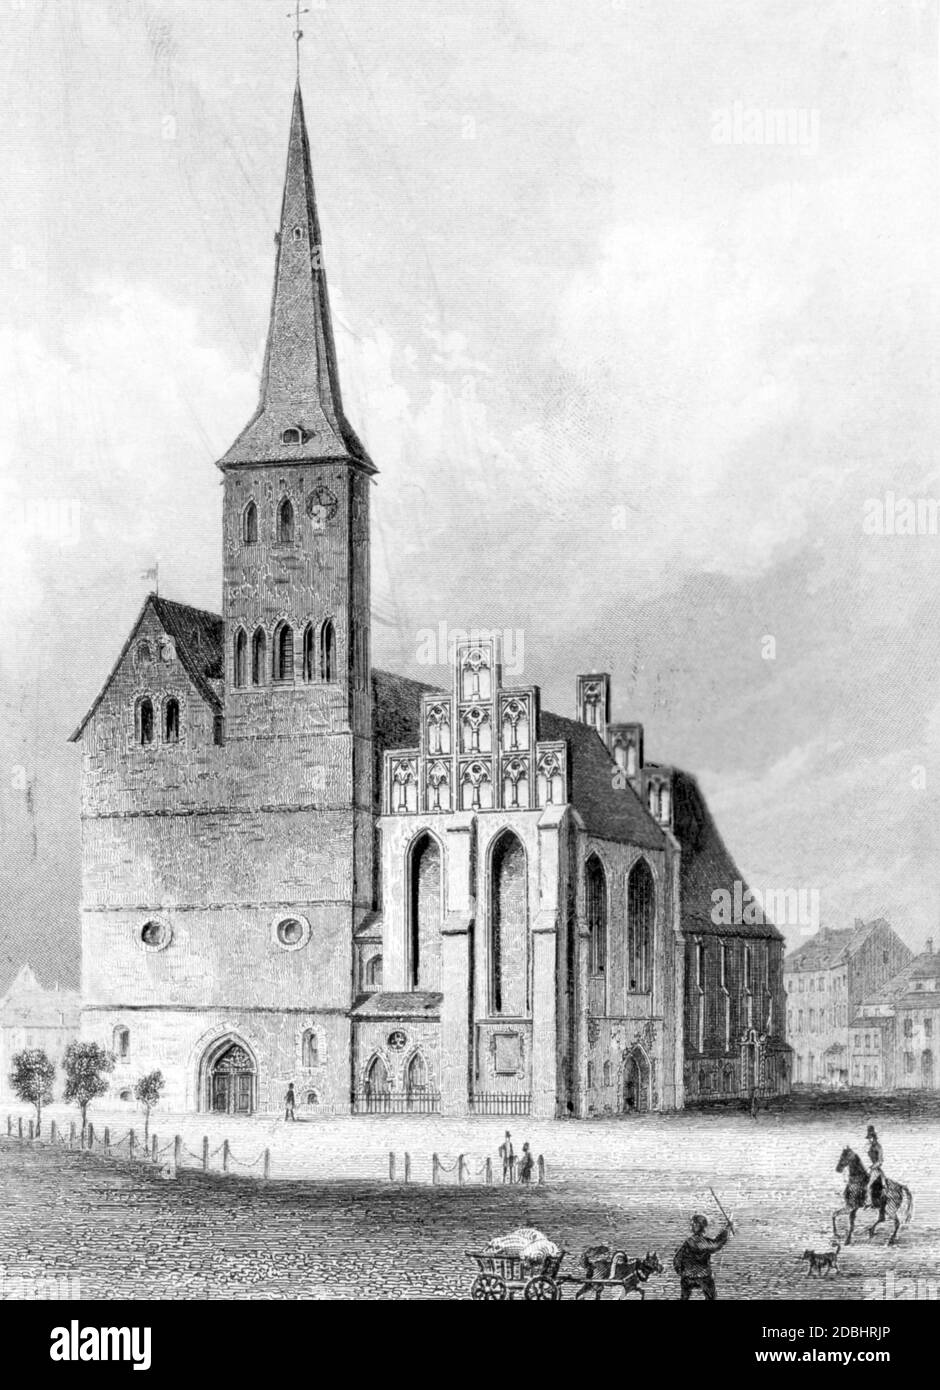 La gravure montre l'église Saint-Nicolas dans le Nikolaiviertel à Berlin-Mitte. Gravure non datée, probablement faite autour de 1800. Banque D'Images